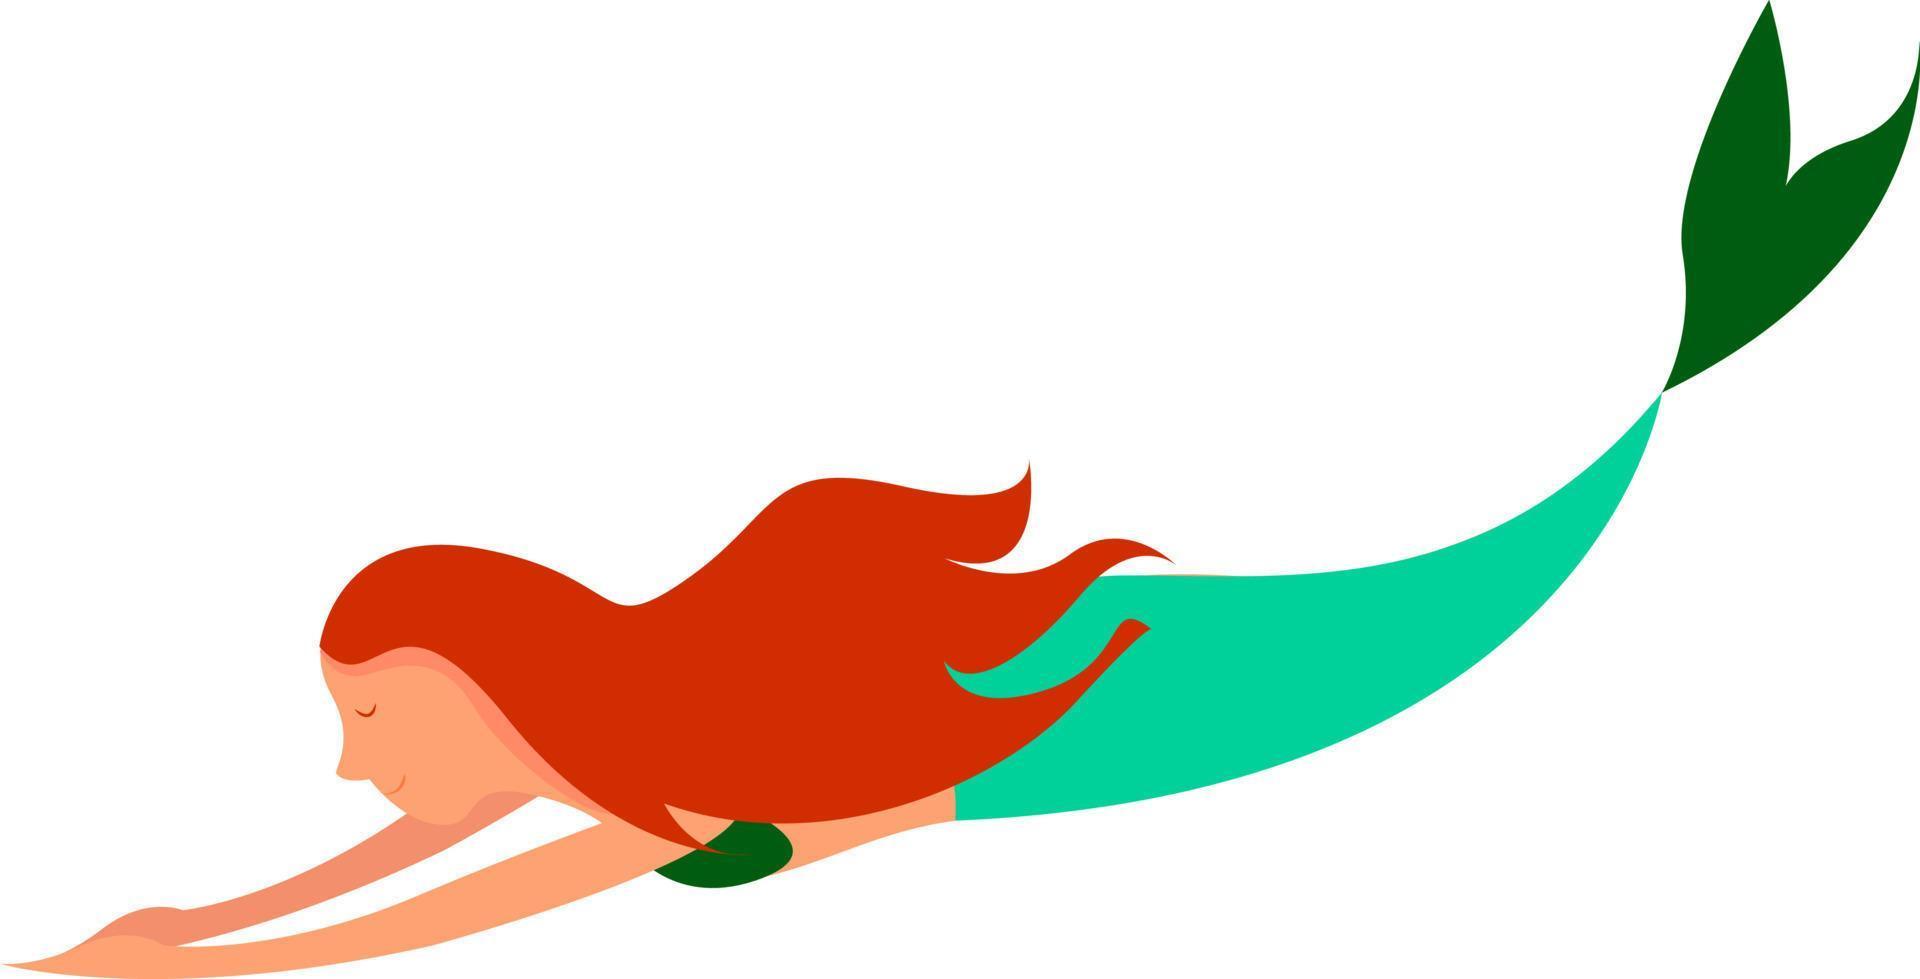 Meerjungfrau mit roten Haaren, Illustration, Vektor auf weißem Hintergrund.